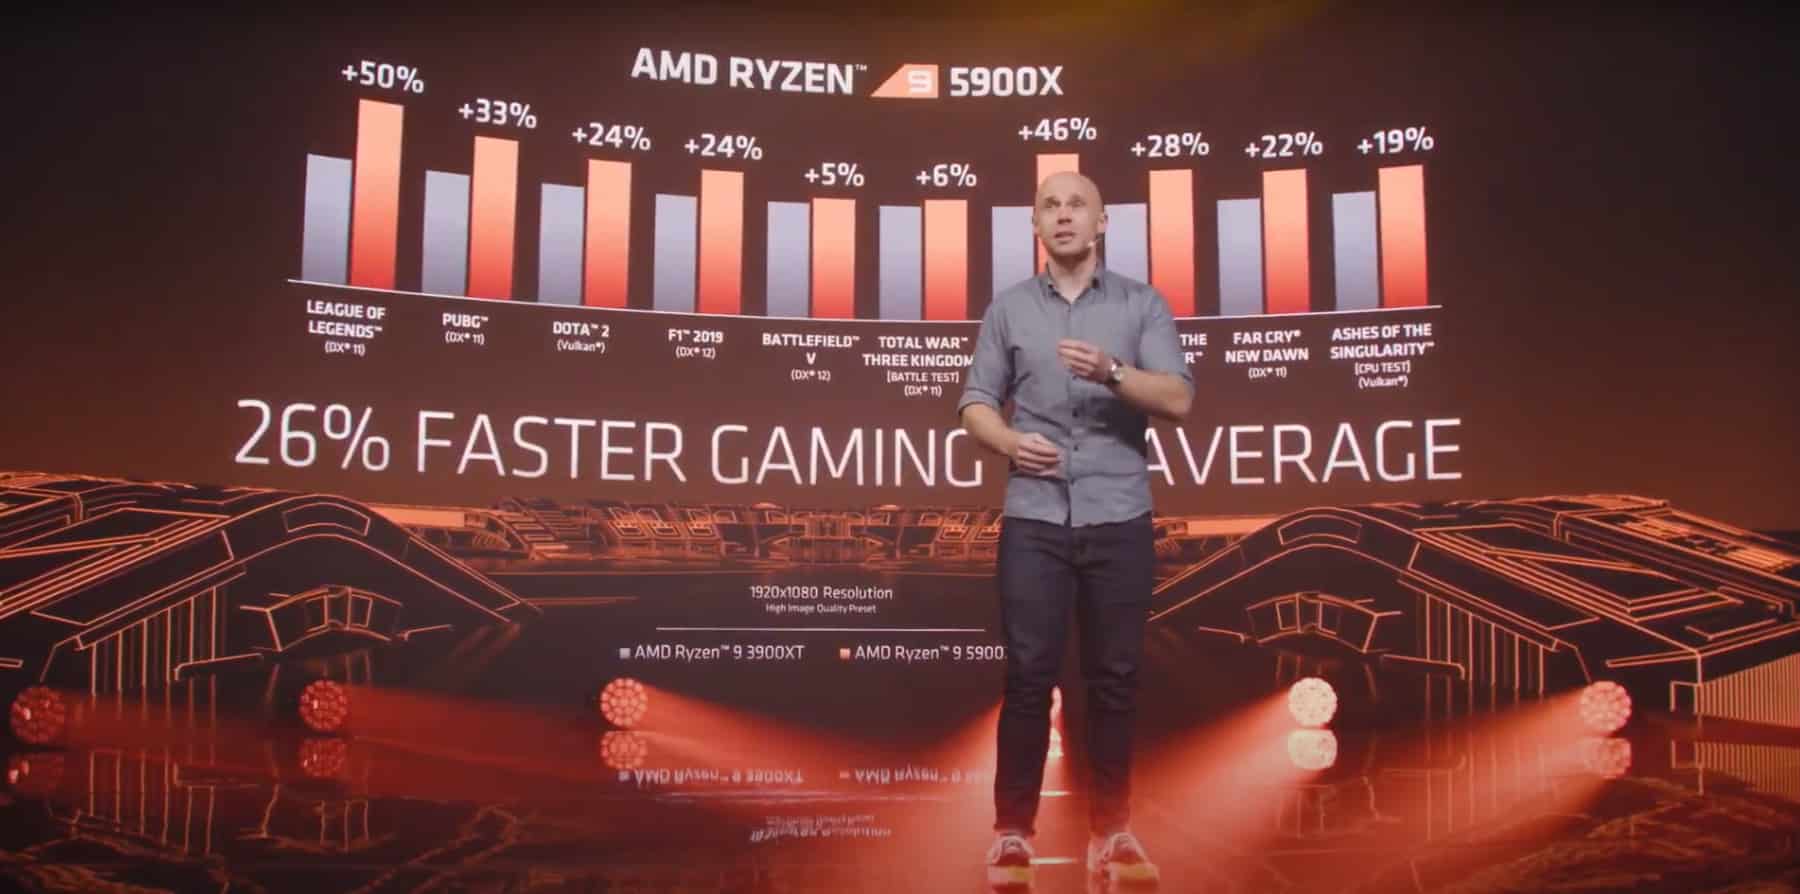 Diretor de marketing da AMD no lançamento do Ryzen 3